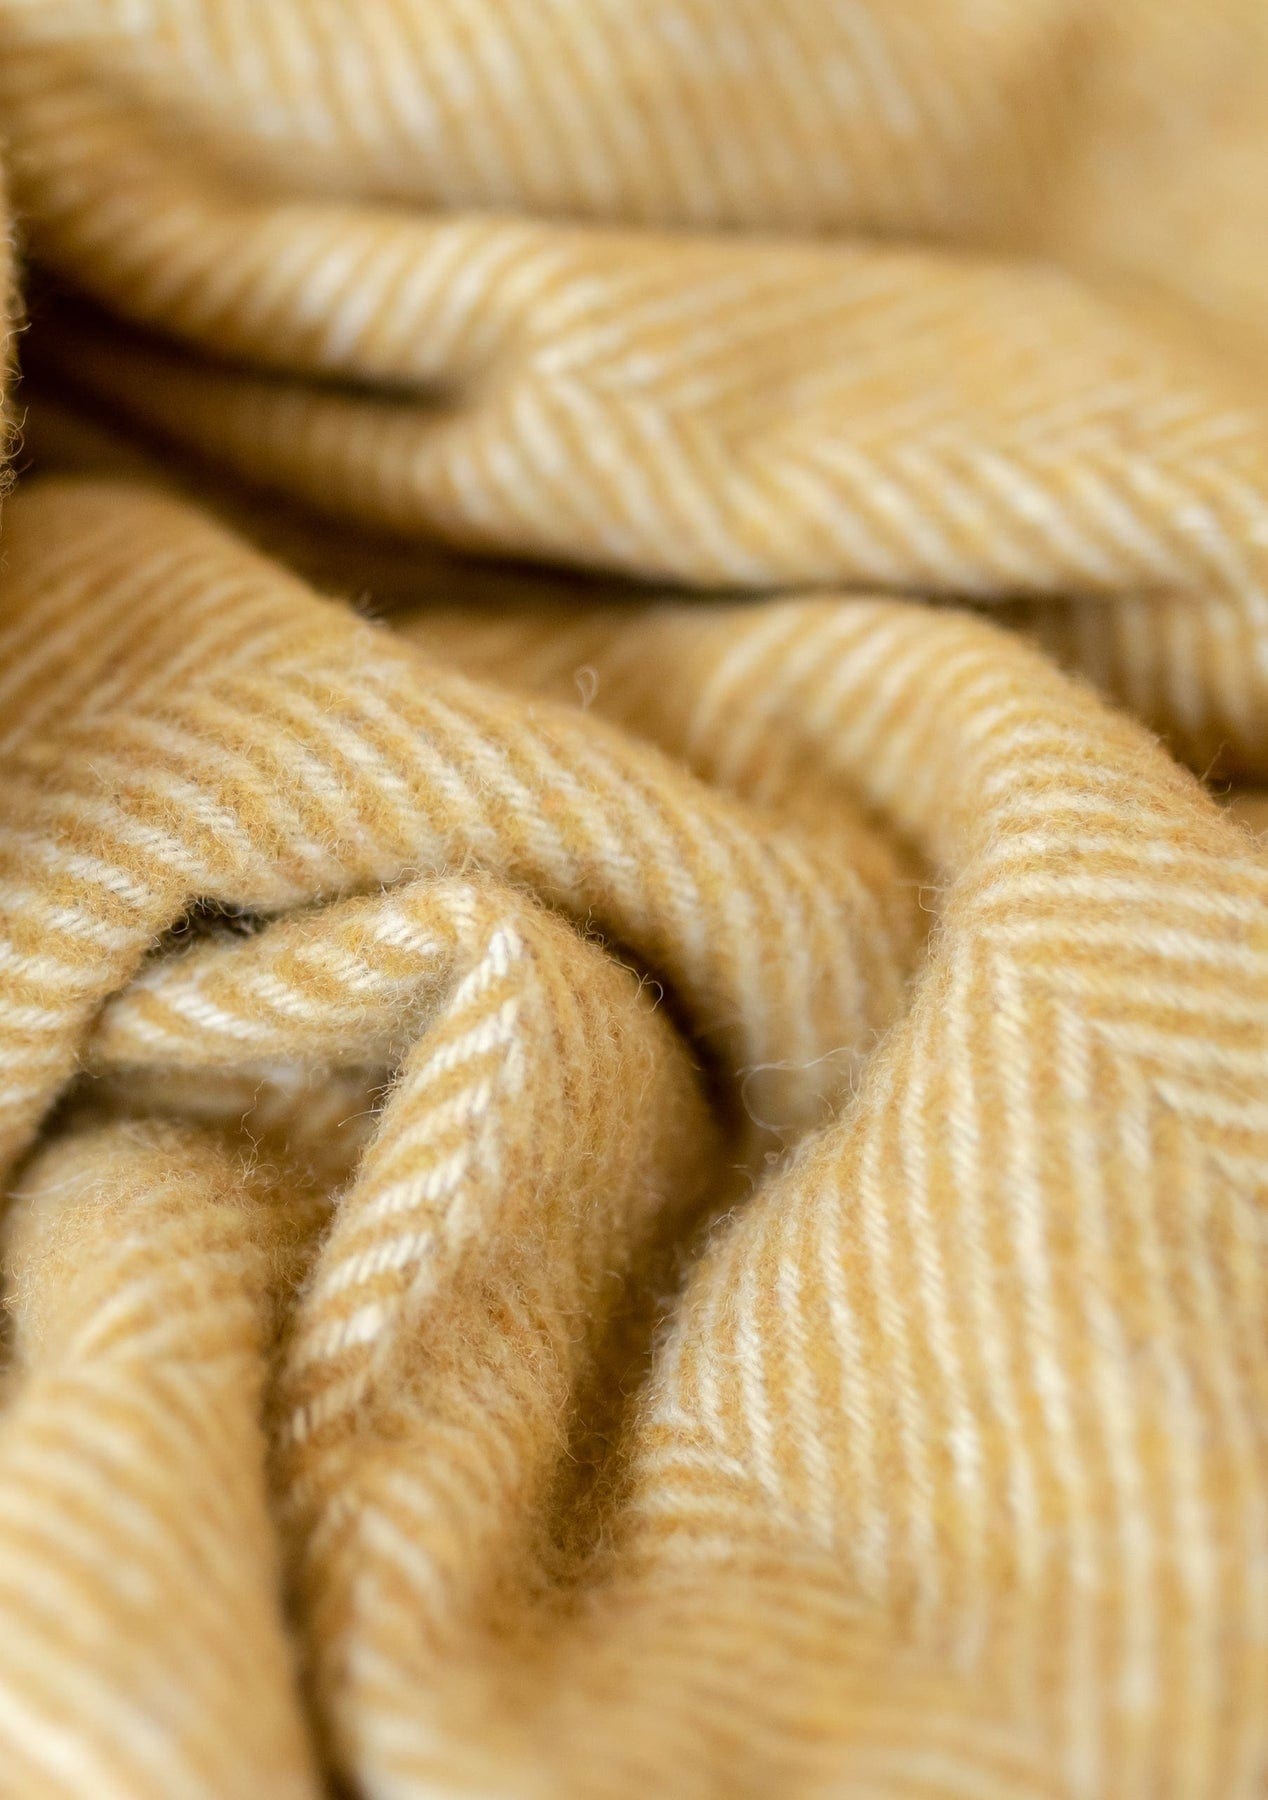 PRIOR SHOP Blankets Mustard Herringbone Recycled Wool Blanket